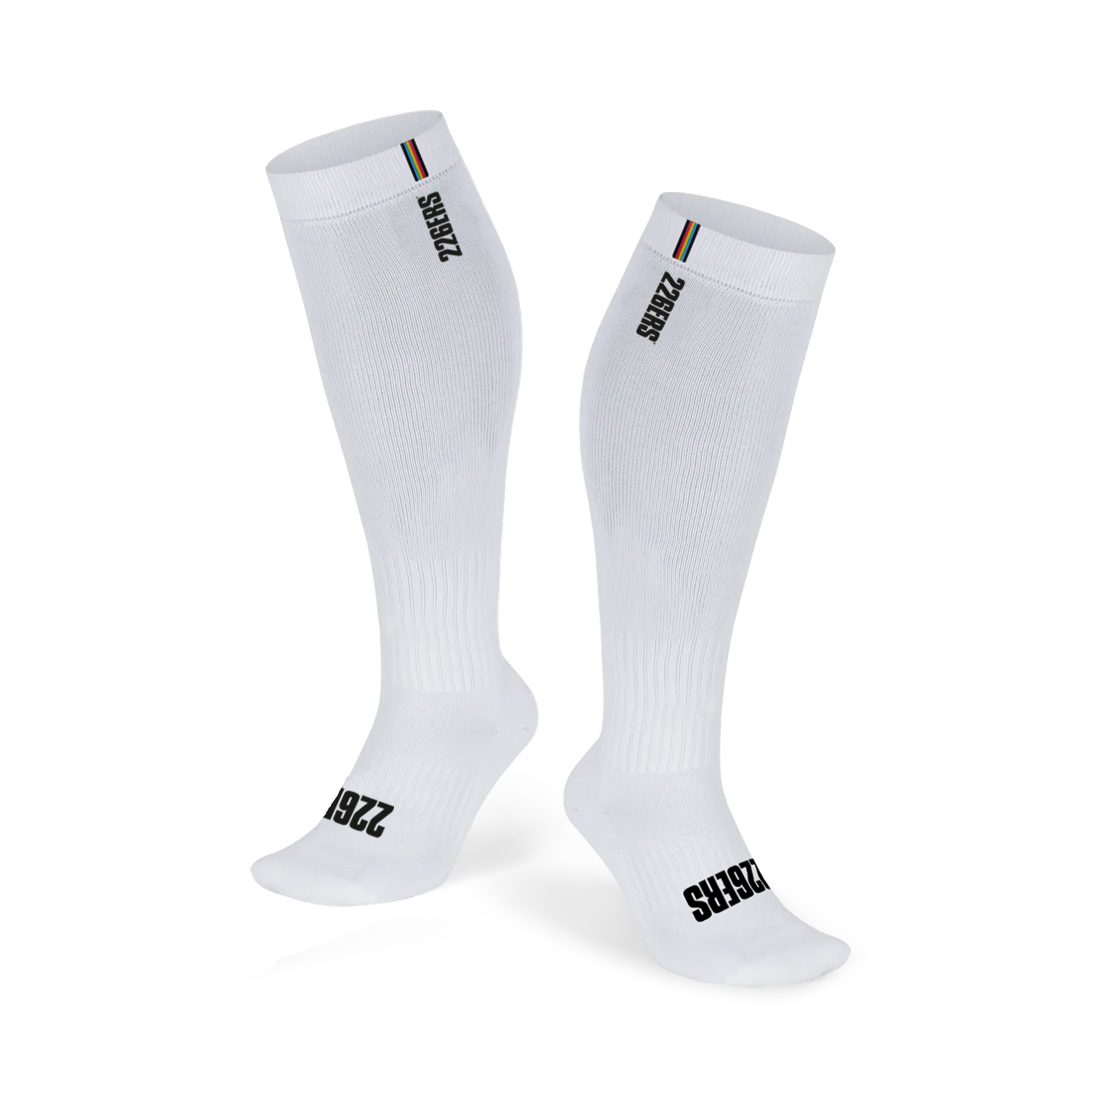 https://www.226ers.com/1252-large_default/compression-socks.jpg